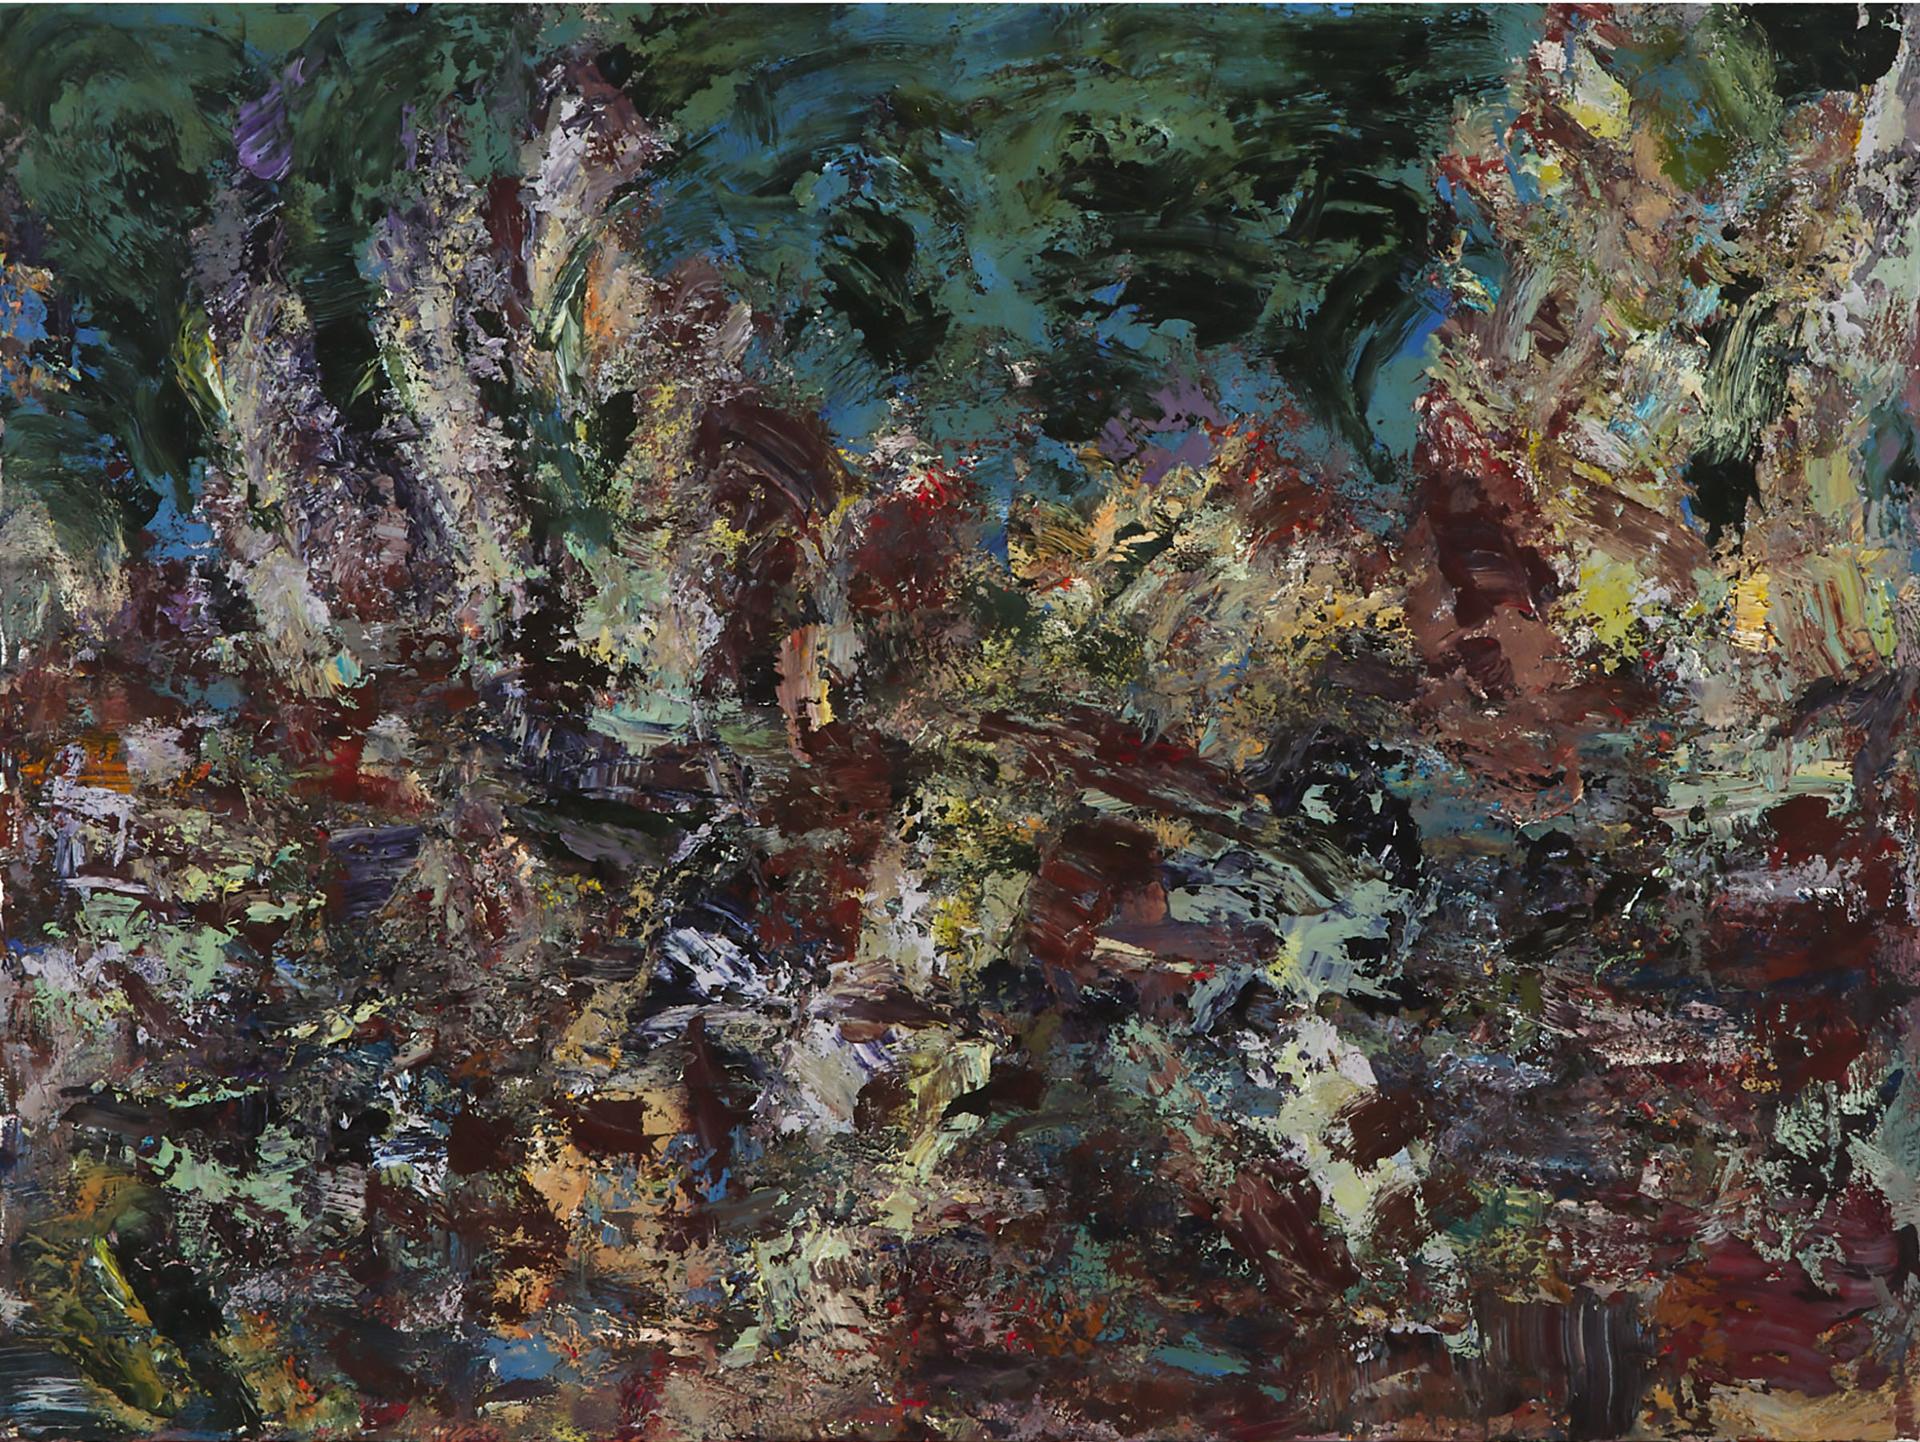 Michael Smith (1951) - Inversion, 1997